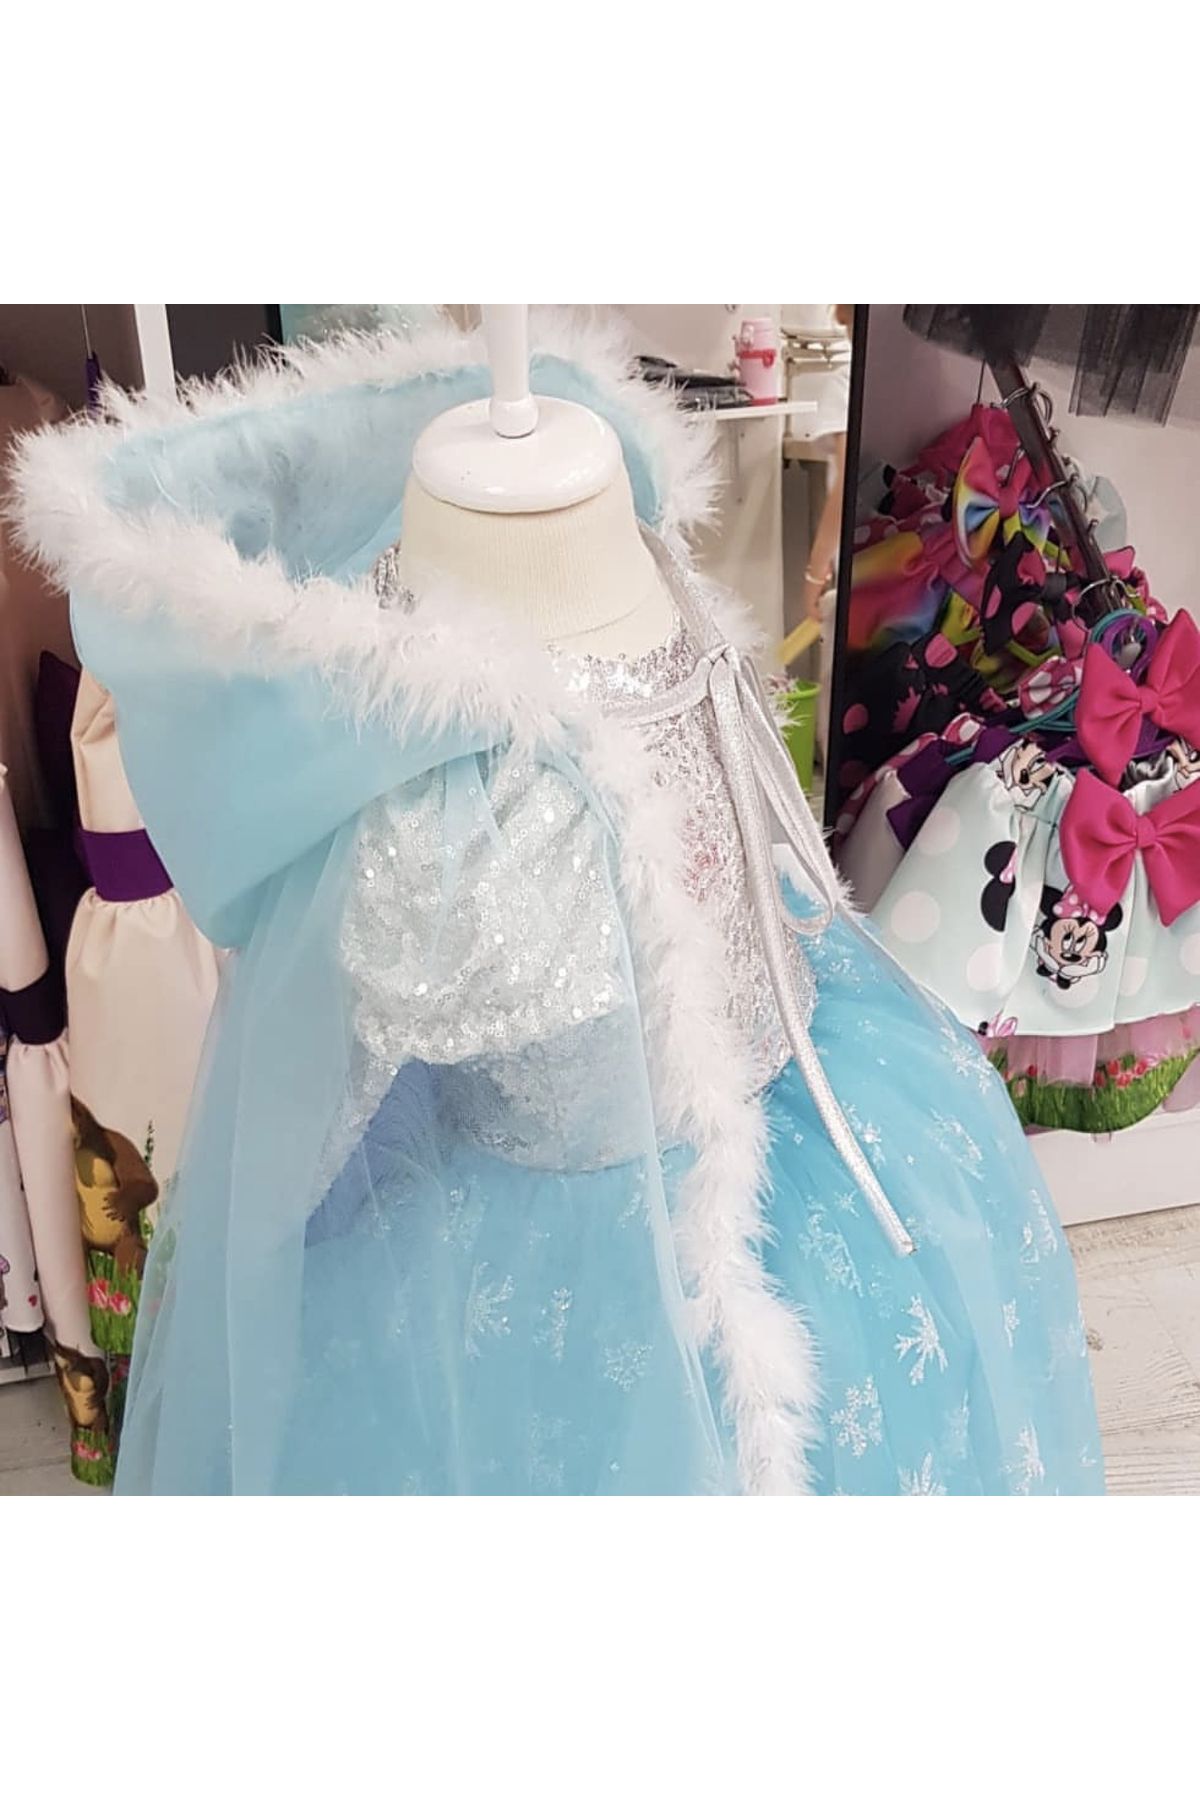 ADA ANNE ÇOCUK MODA Kız Çocuk Elsa Karlar Kraliçesi Kabarık Prenses Elbise